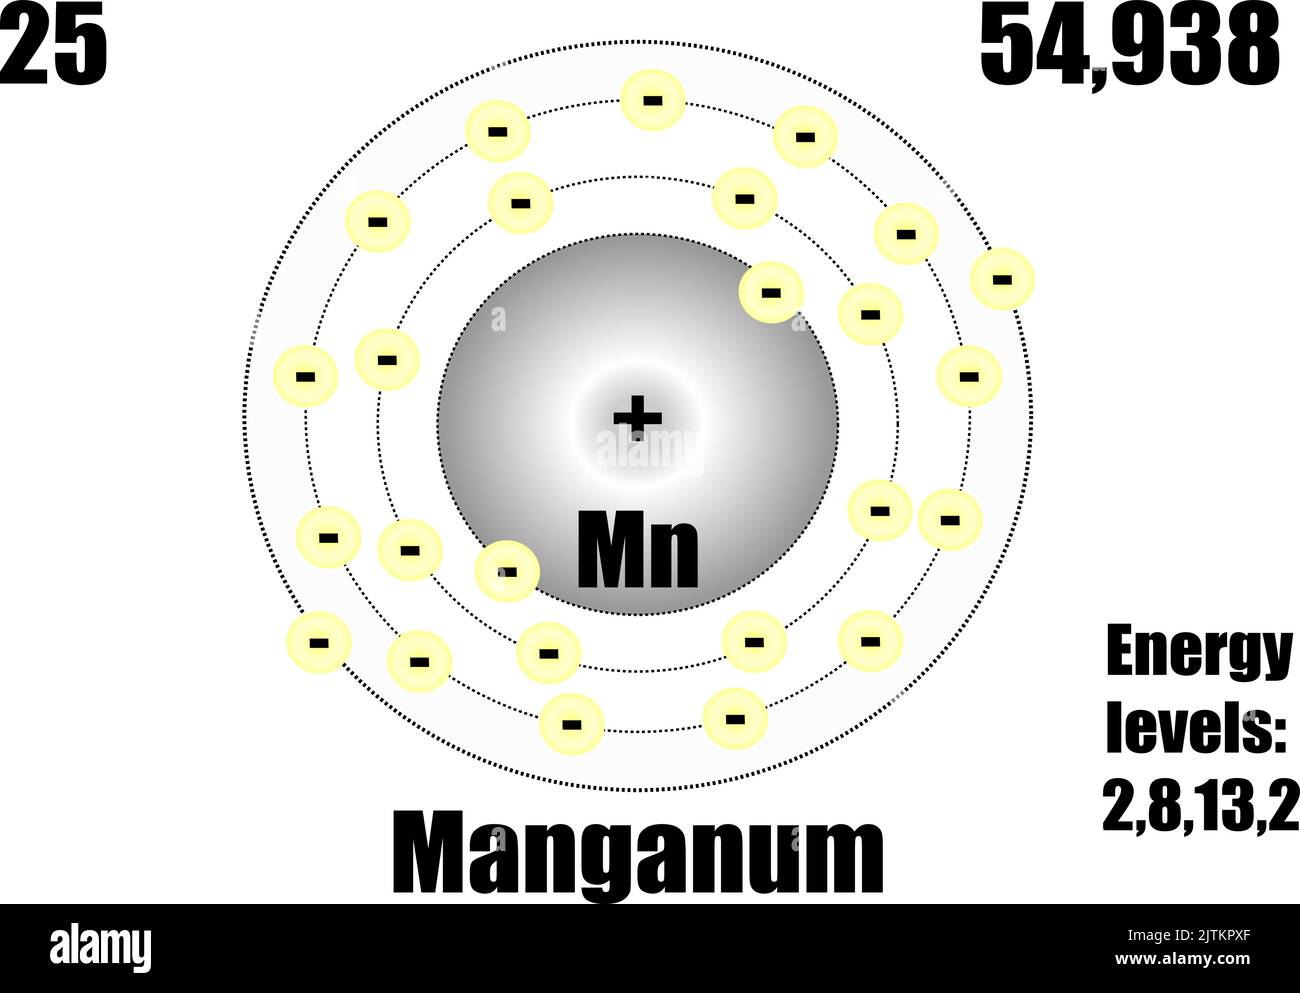 Атом марганца. Модель атома марганца. Как выглядит атом марганца.